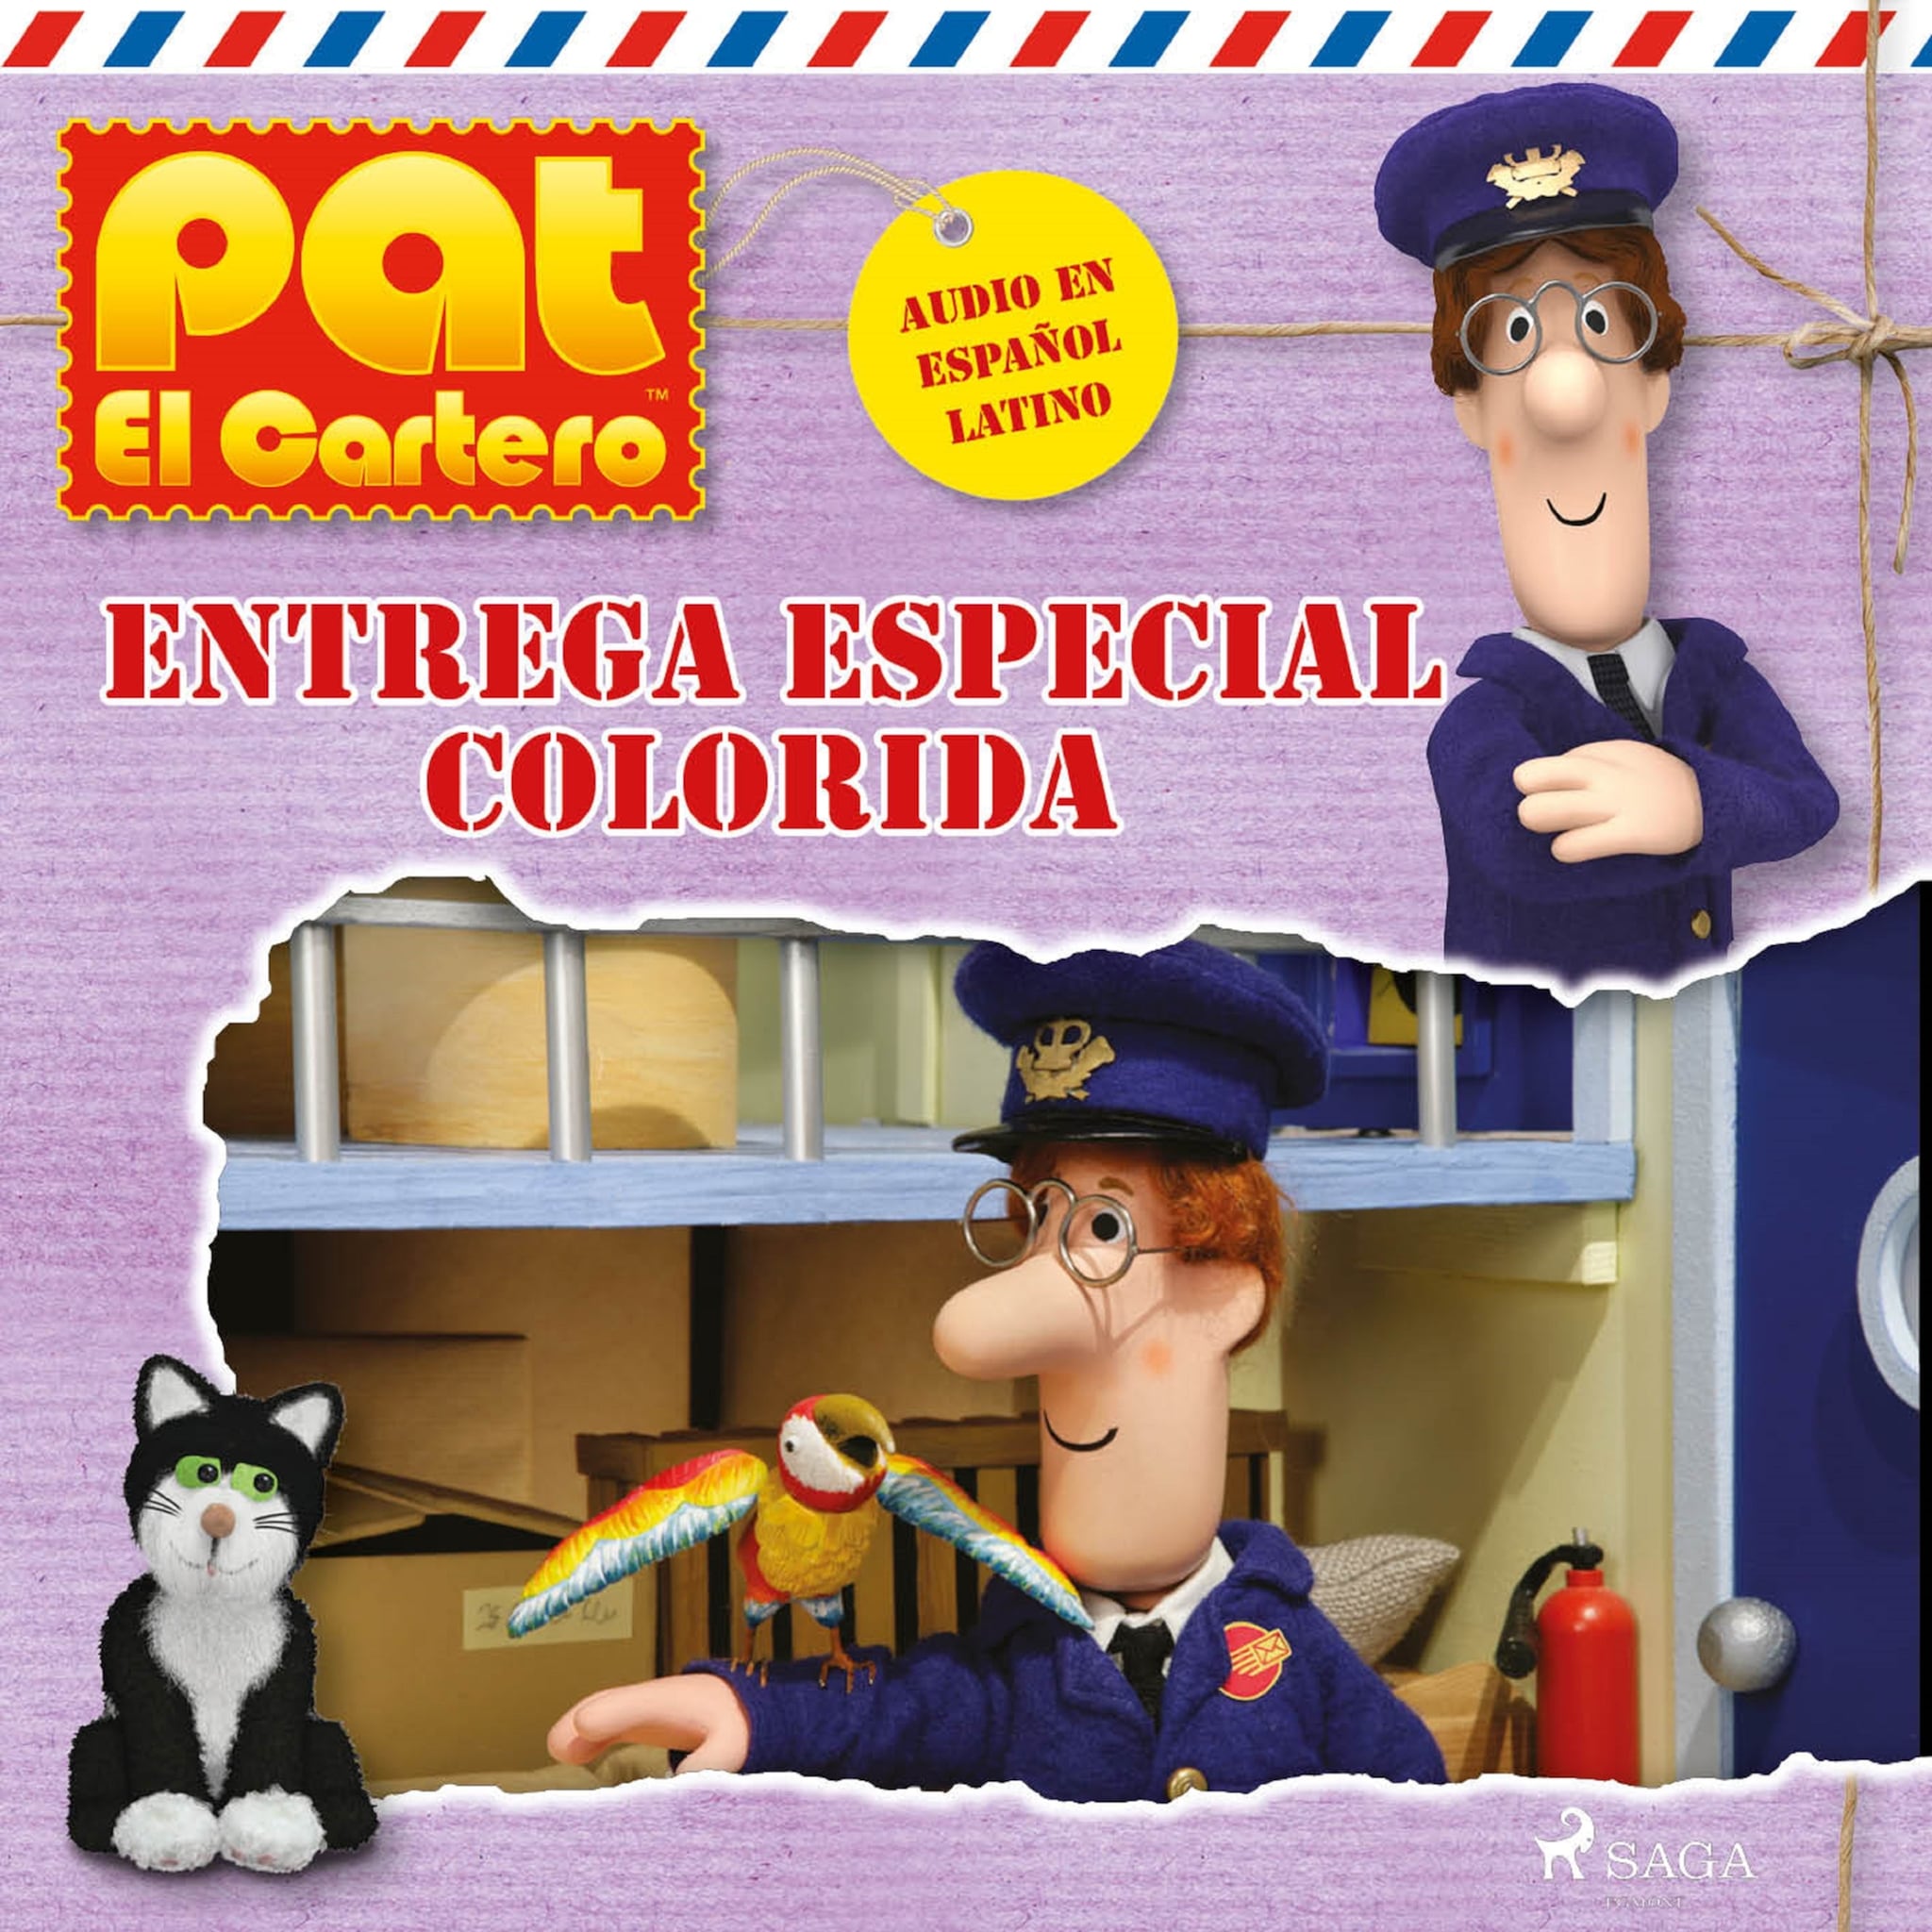 Pat el cartero – Entrega especial colorida ilmaiseksi